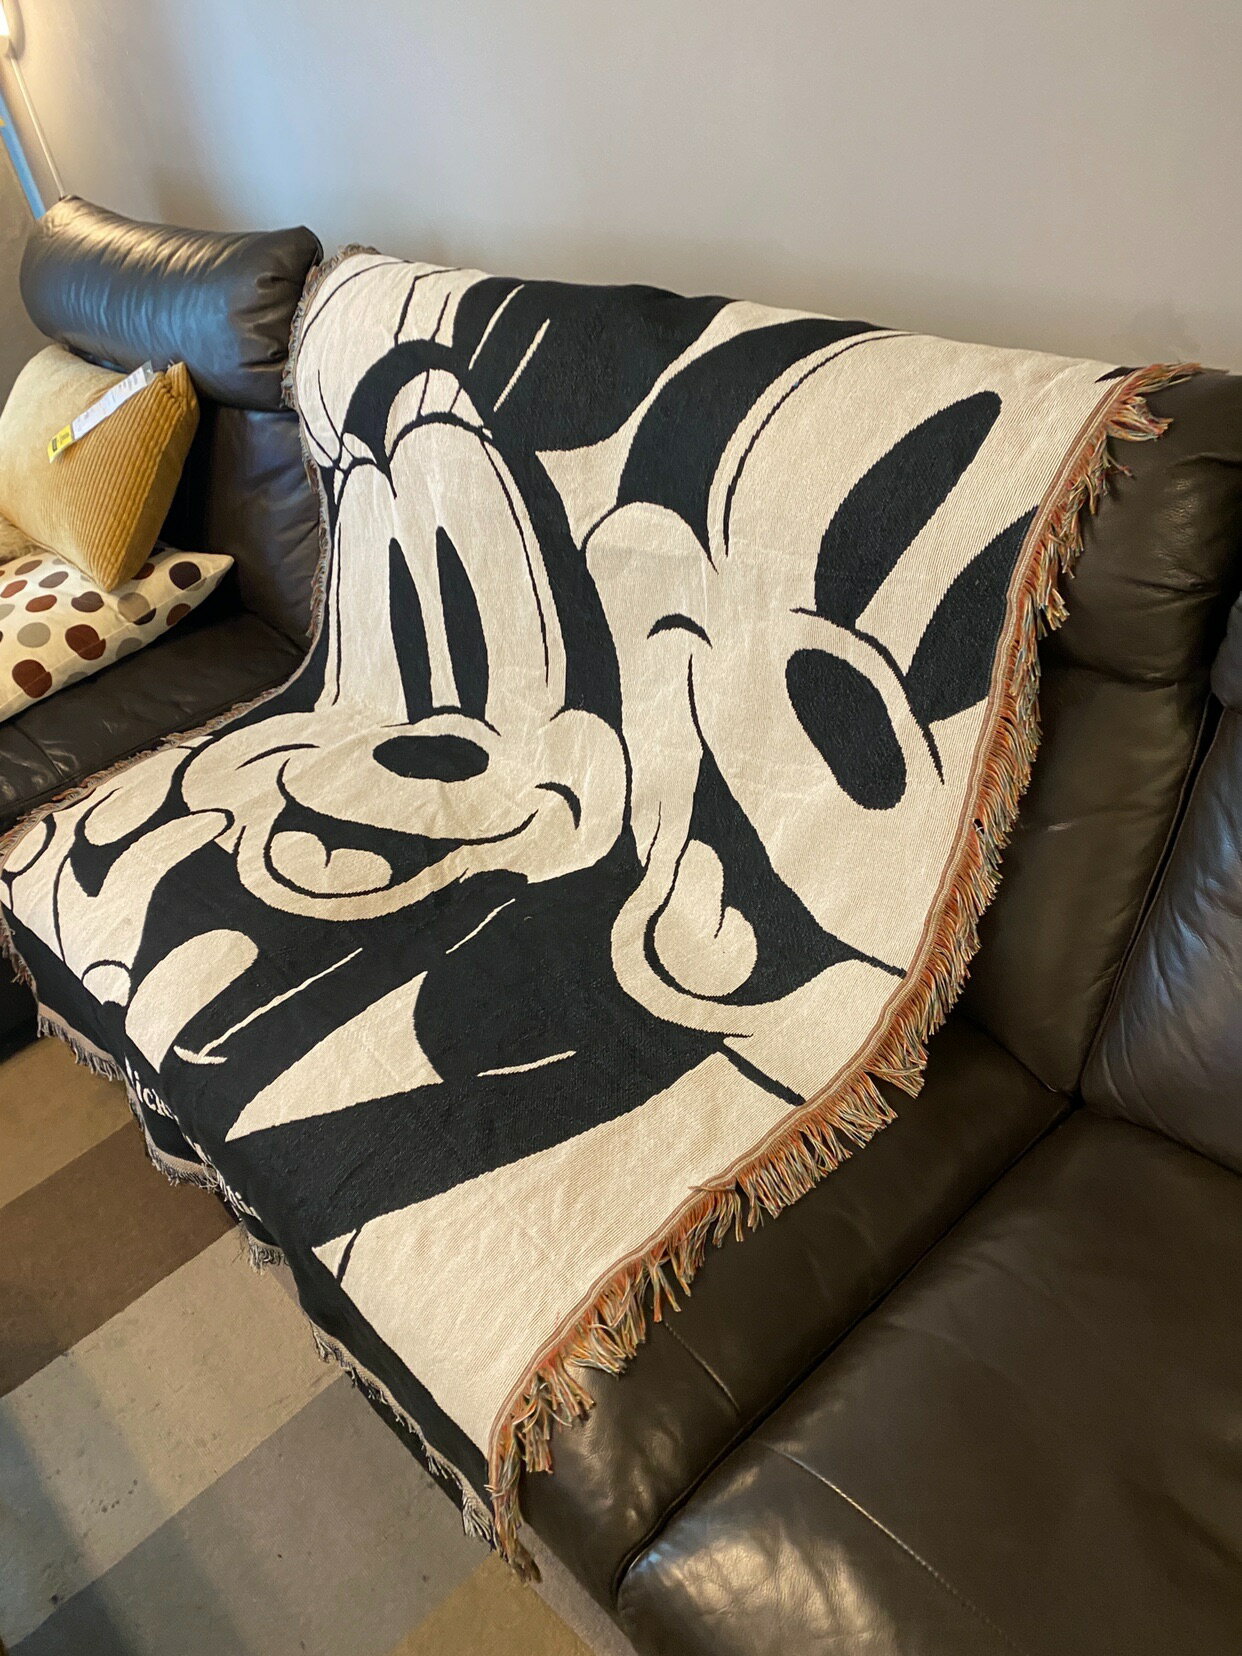 動漫黑白米奇 休閑毯沙發蓋毯 卡通 日本動畫 臥室客廳裝飾毯掛毯